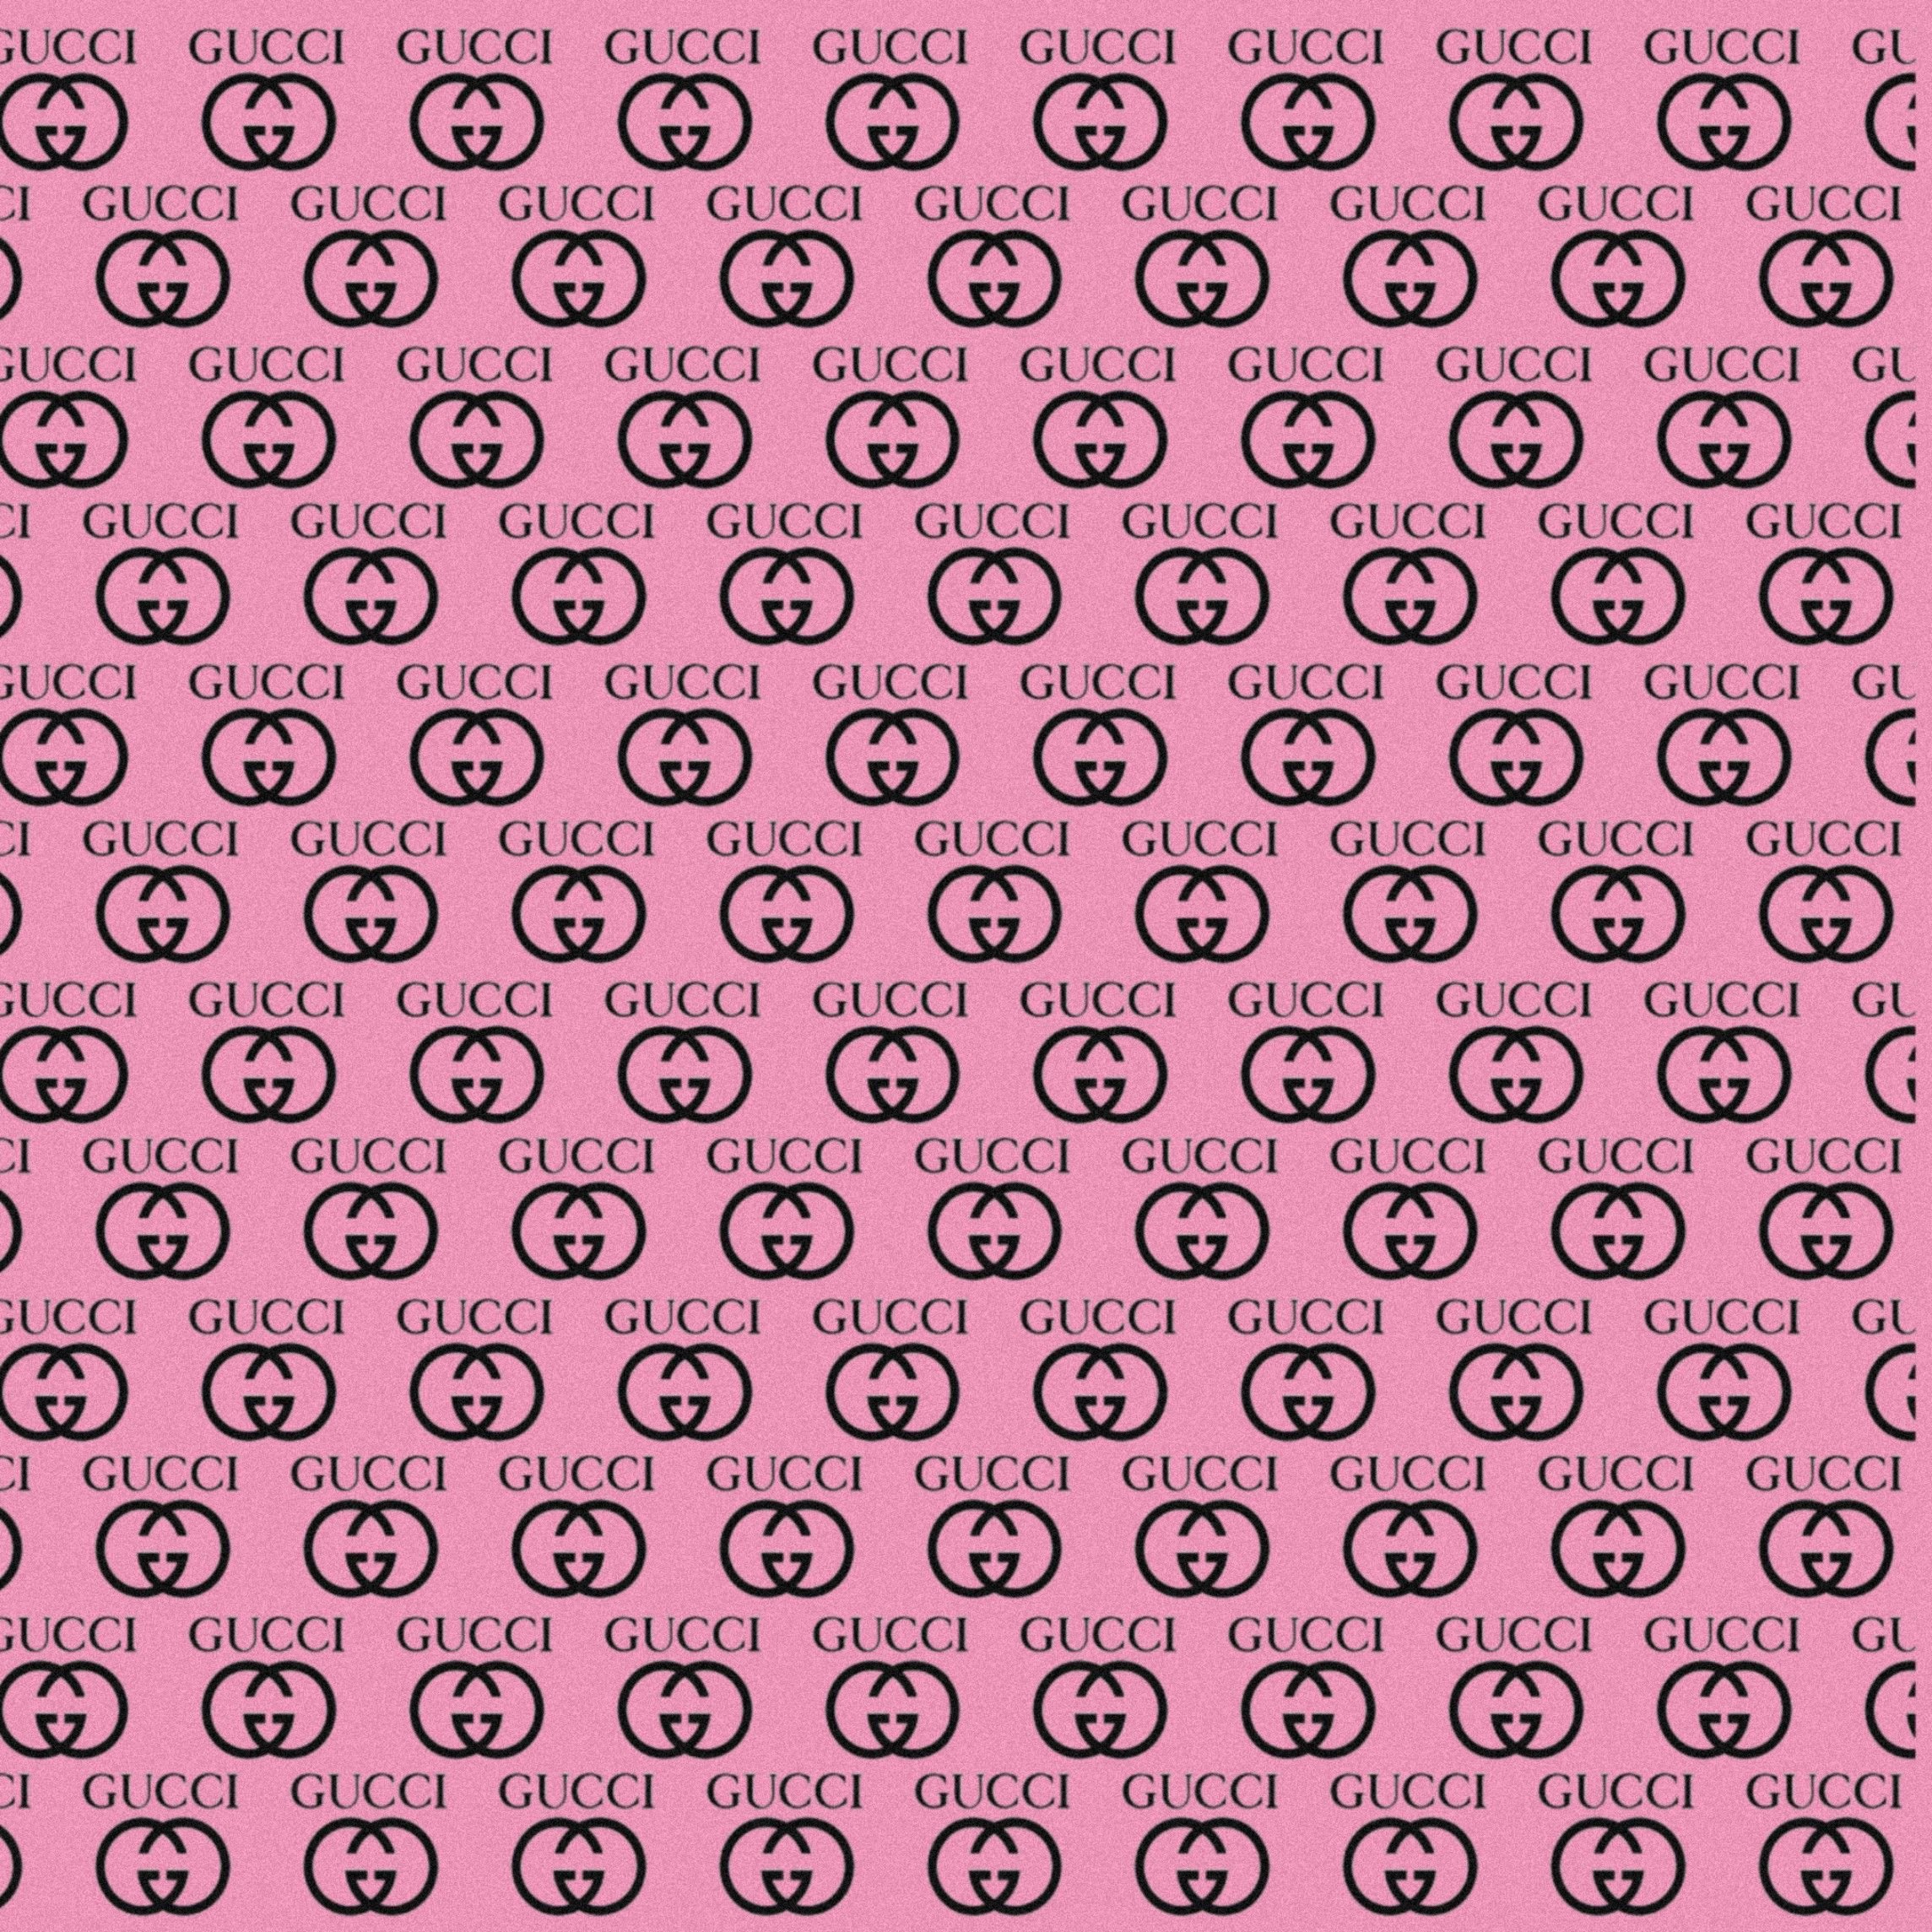 Bạn yêu thích màu hồng và Gucci? Hãy đến với bộ sưu tập hình nền Gucci màu hồng đầy thú vị của chúng tôi! Hình ảnh rực rỡ và đẹp mắt sẽ khiến bạn ngỡ ngàng. Hãy sử dụng những hình nền này để trang trí cho điện thoại hoặc máy tính của bạn và cảm nhận sự sang trọng của dòng sản phẩm Gucci!